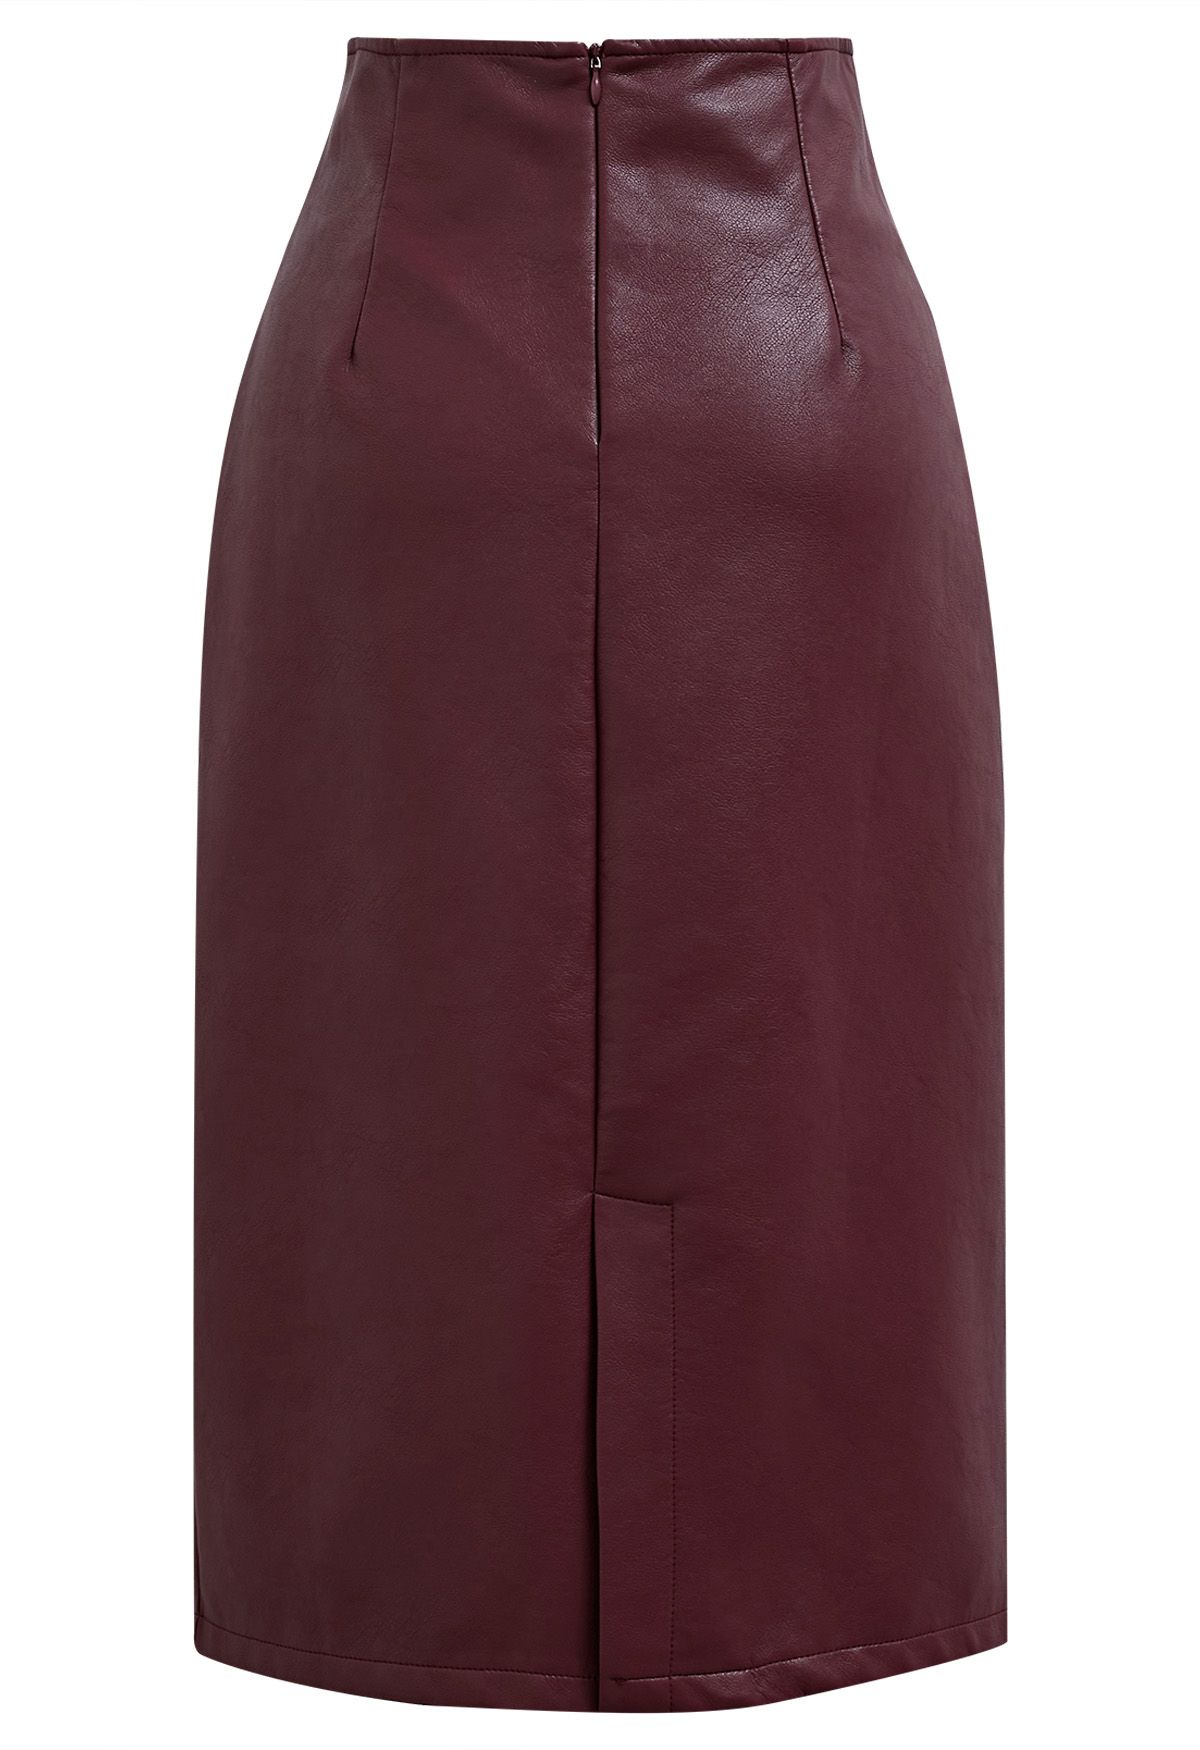 Notch Waistline Faux Leather Midi Skirt in Burgundy